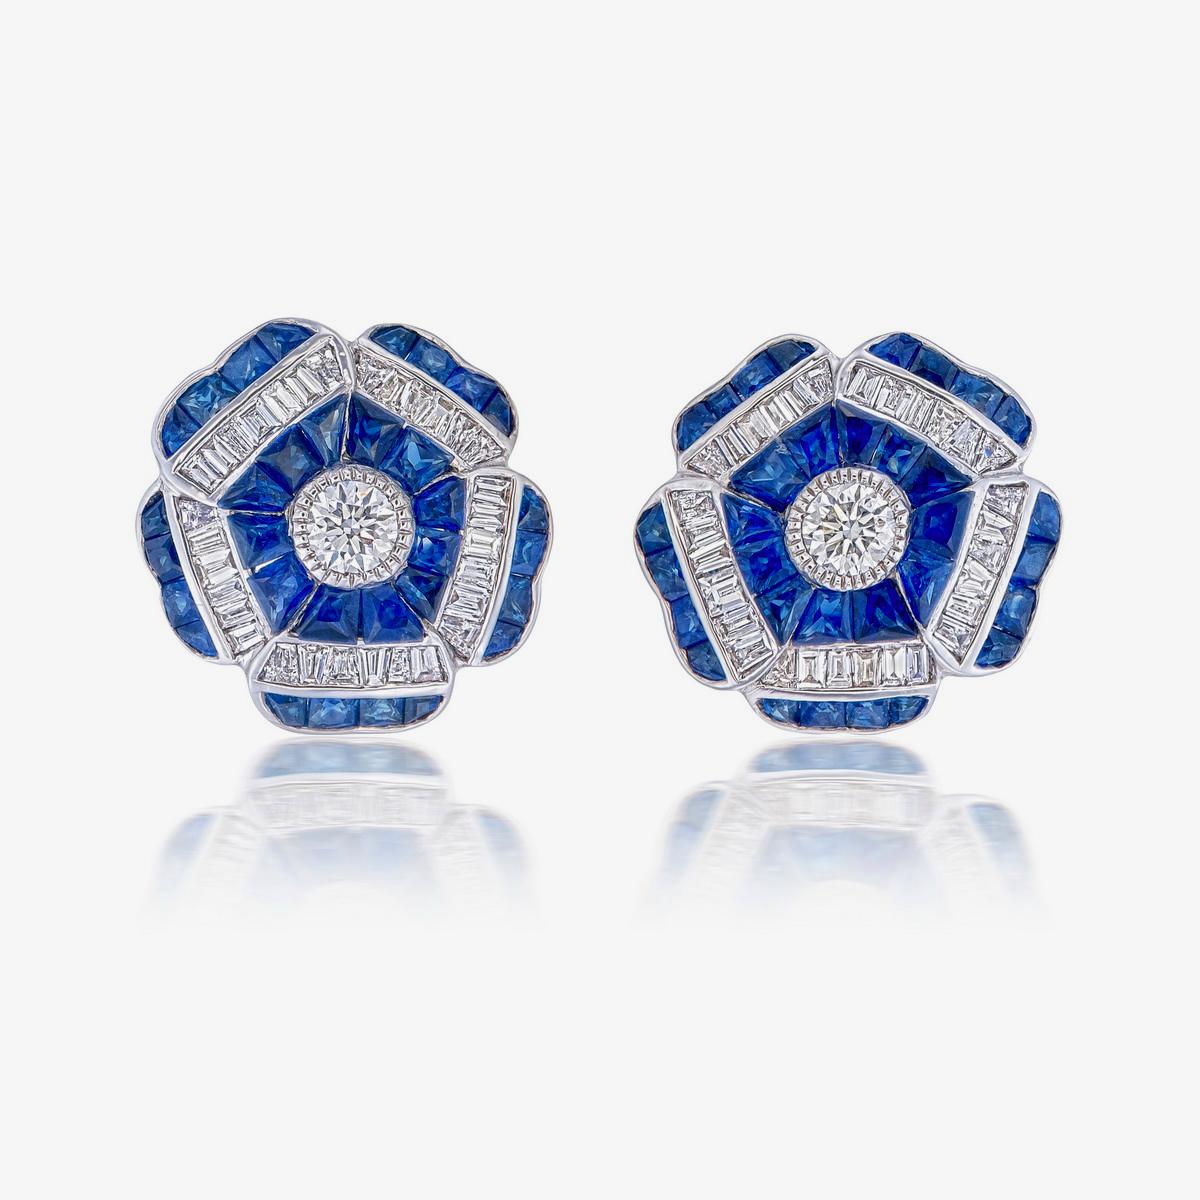 Ein Paar feine, moderne Ohrringe mit blauem Saphir und Diamanten aus 18 Karat Gold. Eine gute Wahl für Lifestyle-Kleidung.
- Es gibt zwei zentrale Diamanten mit einem Gesamtgewicht von 0,25 Karat
- Einundsechzig sich verjüngende Baguette-Diamanten